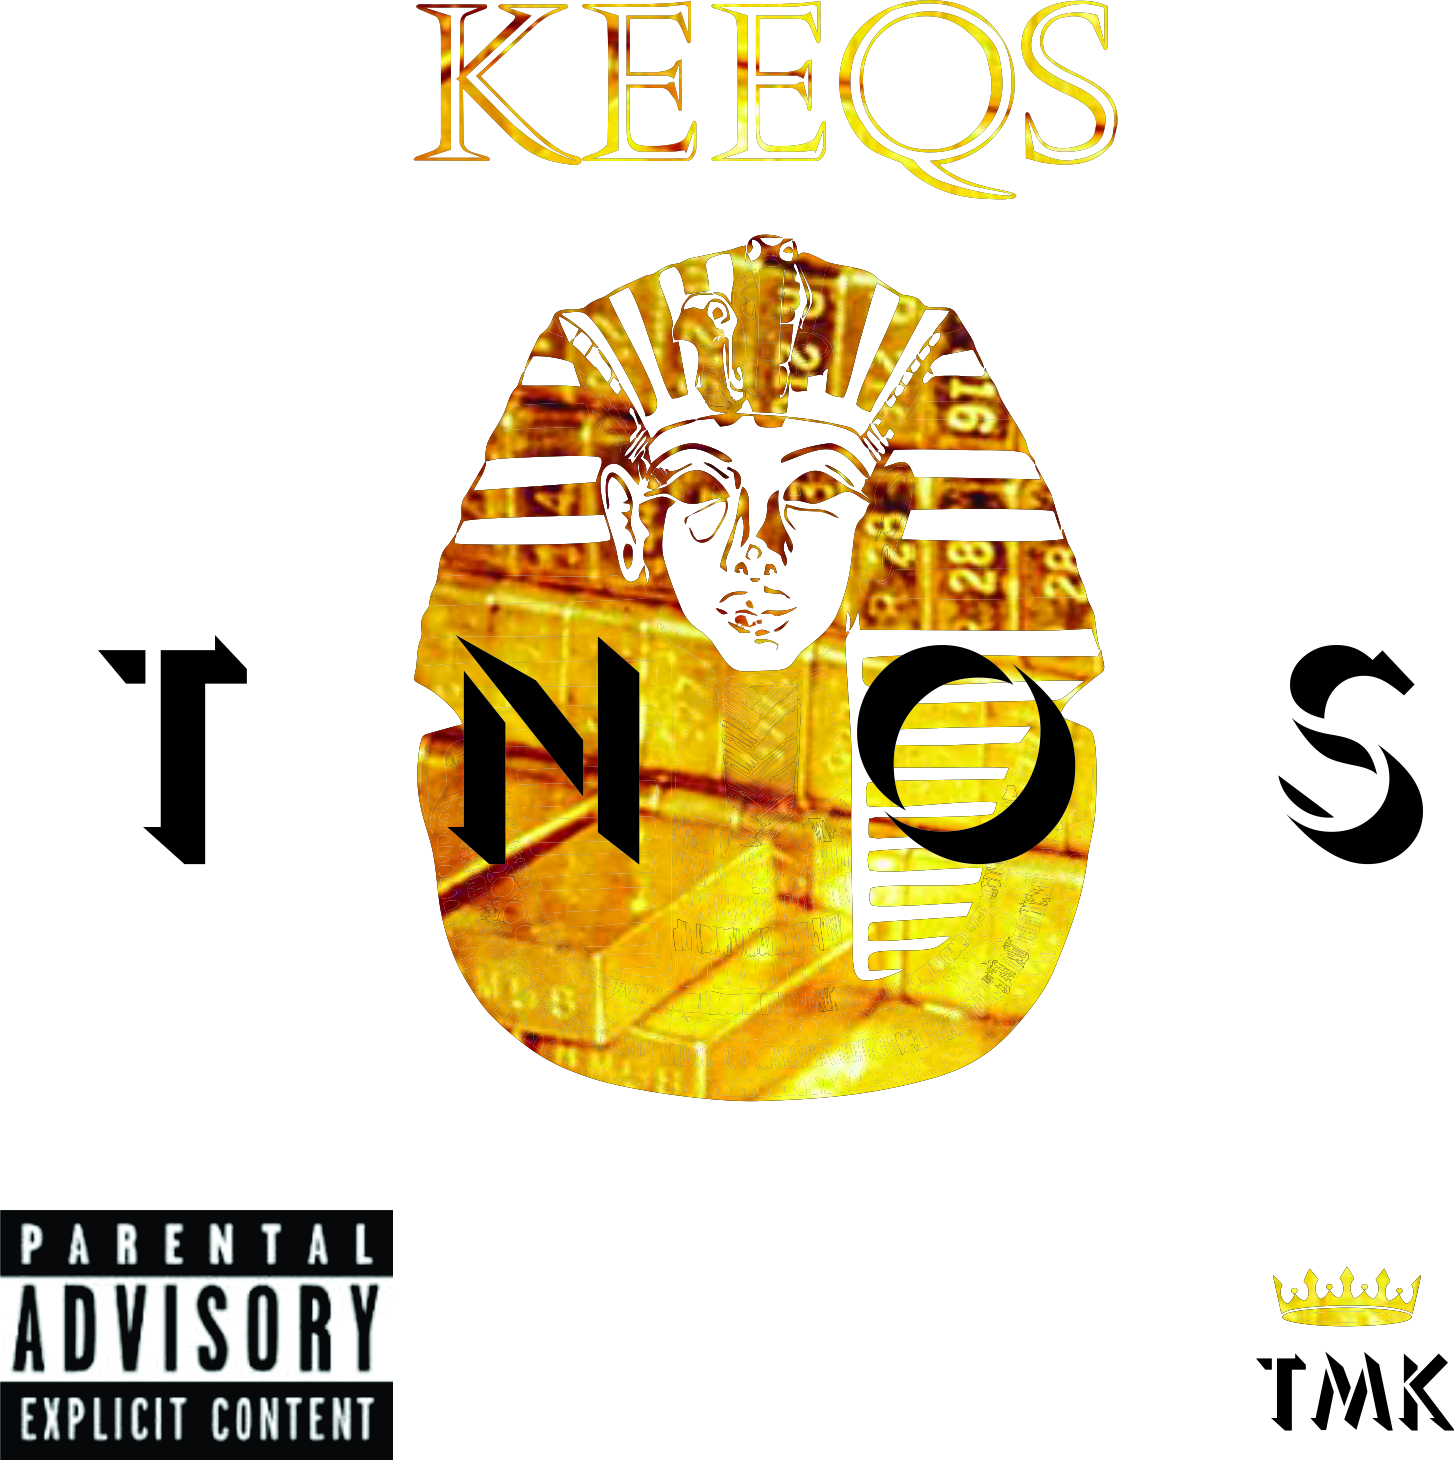 TNOS Cover (5x5)in.